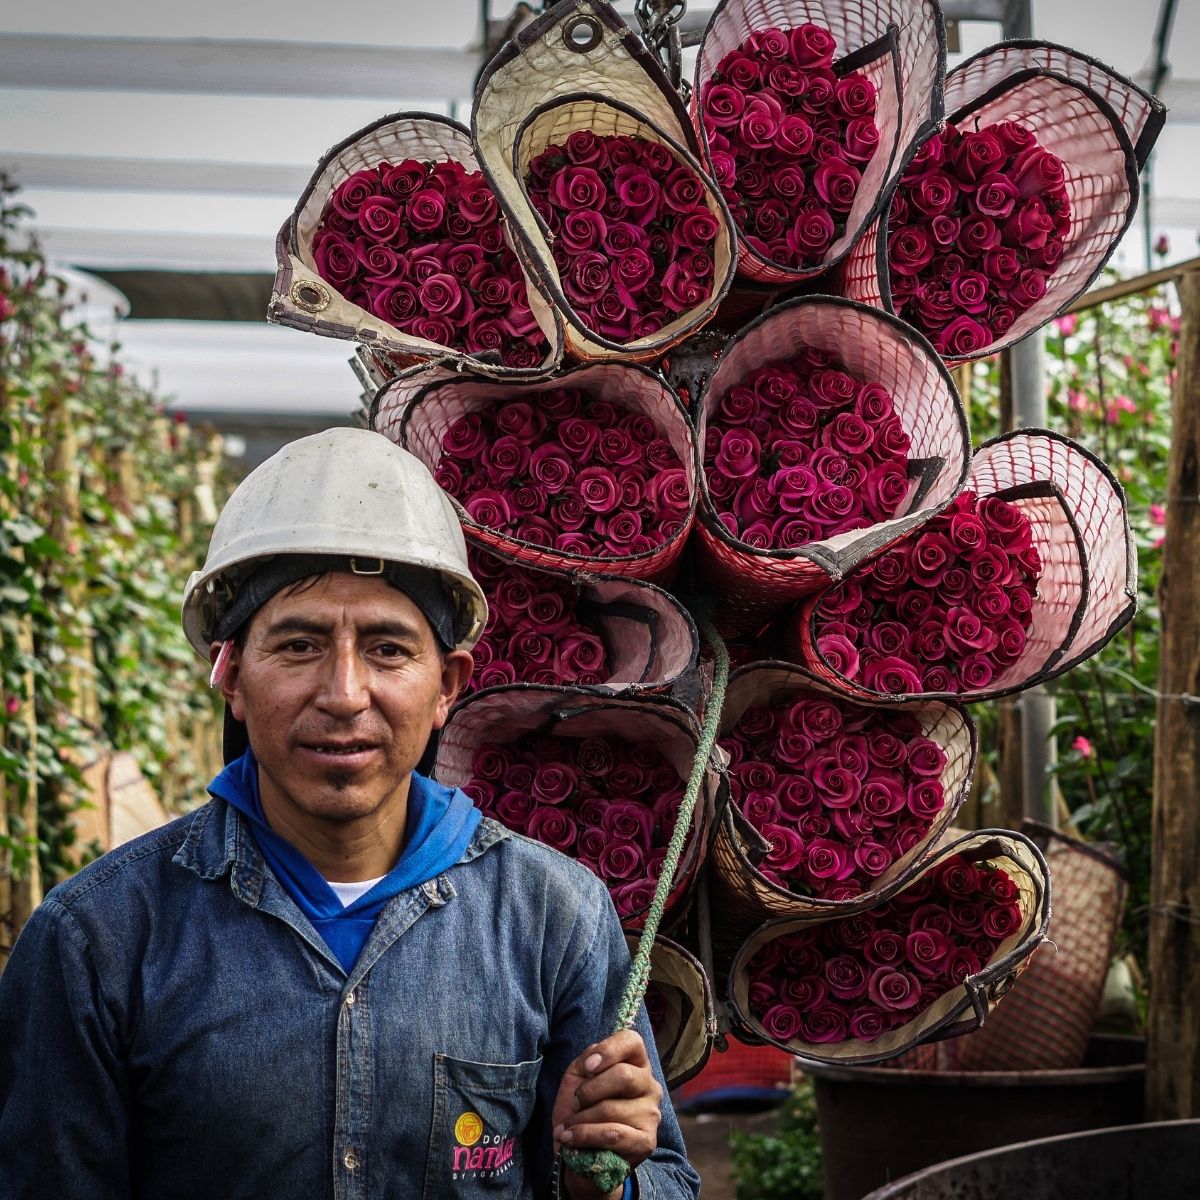 Roses fraiches d’Equateur - Farm Direct - Origine claire de sources fiables.